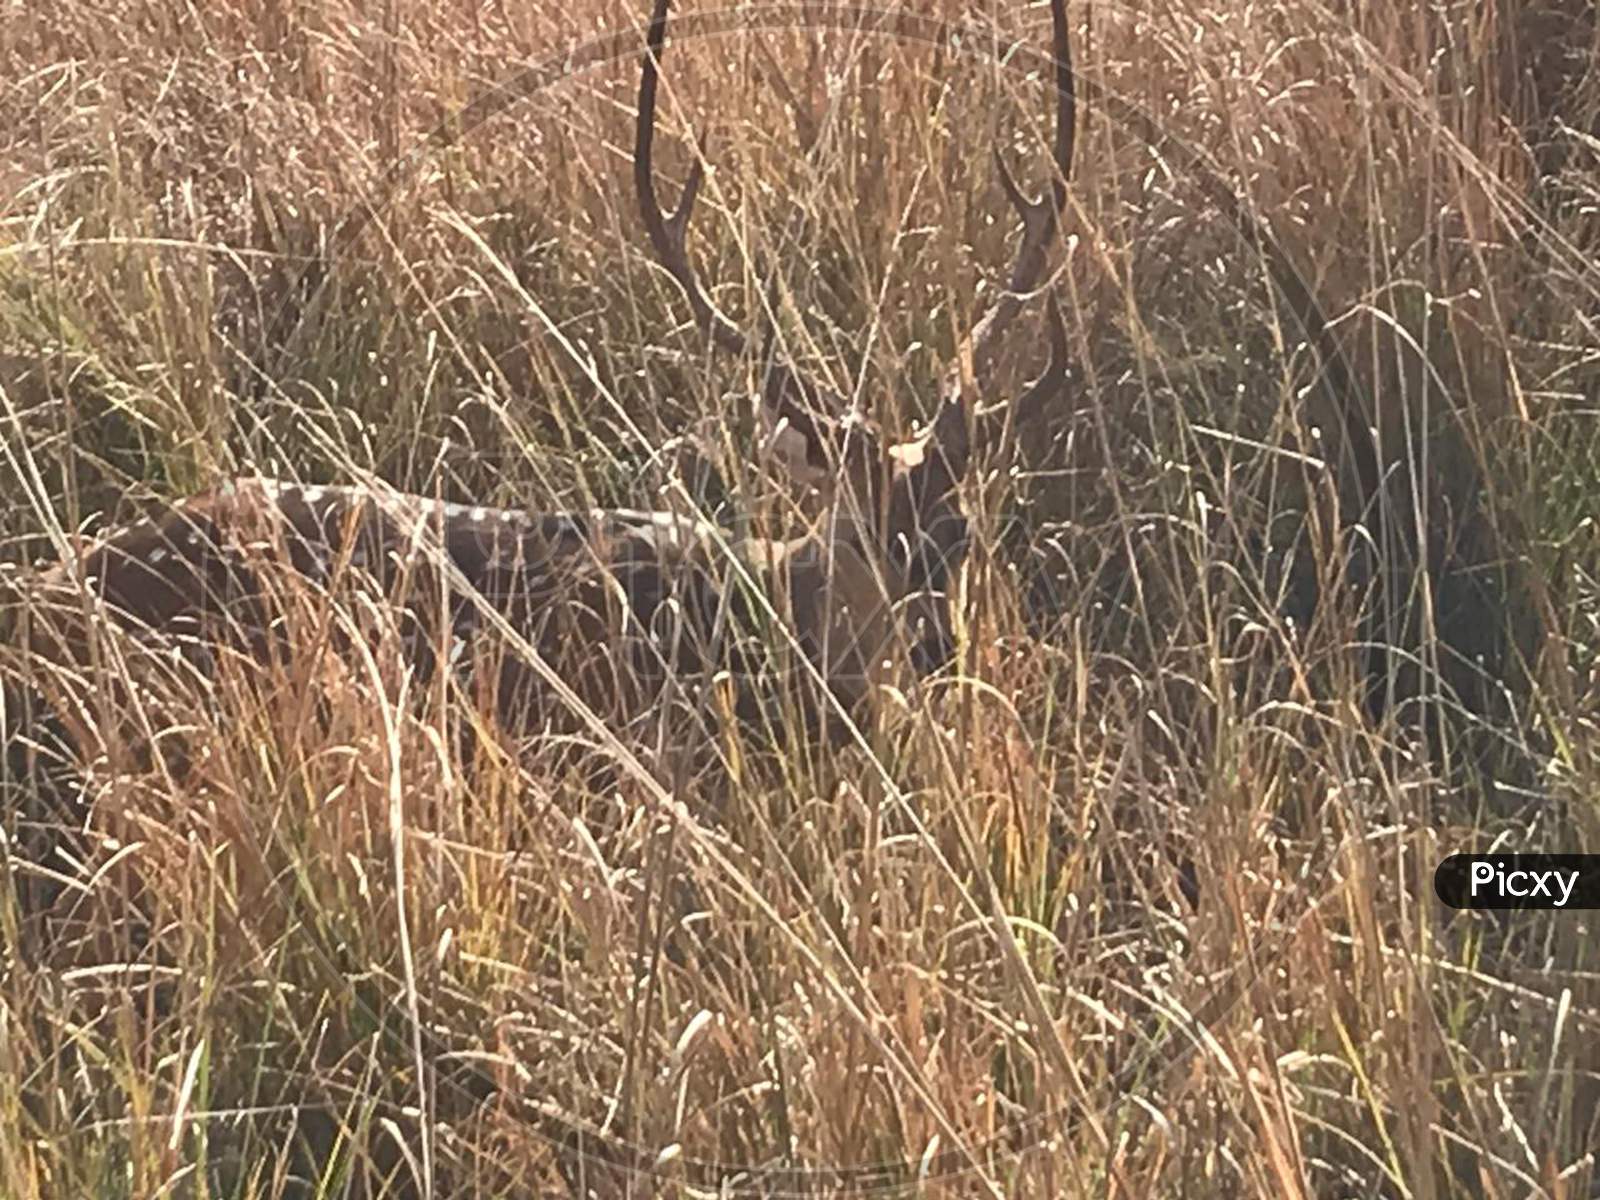 Deer at ranthambore